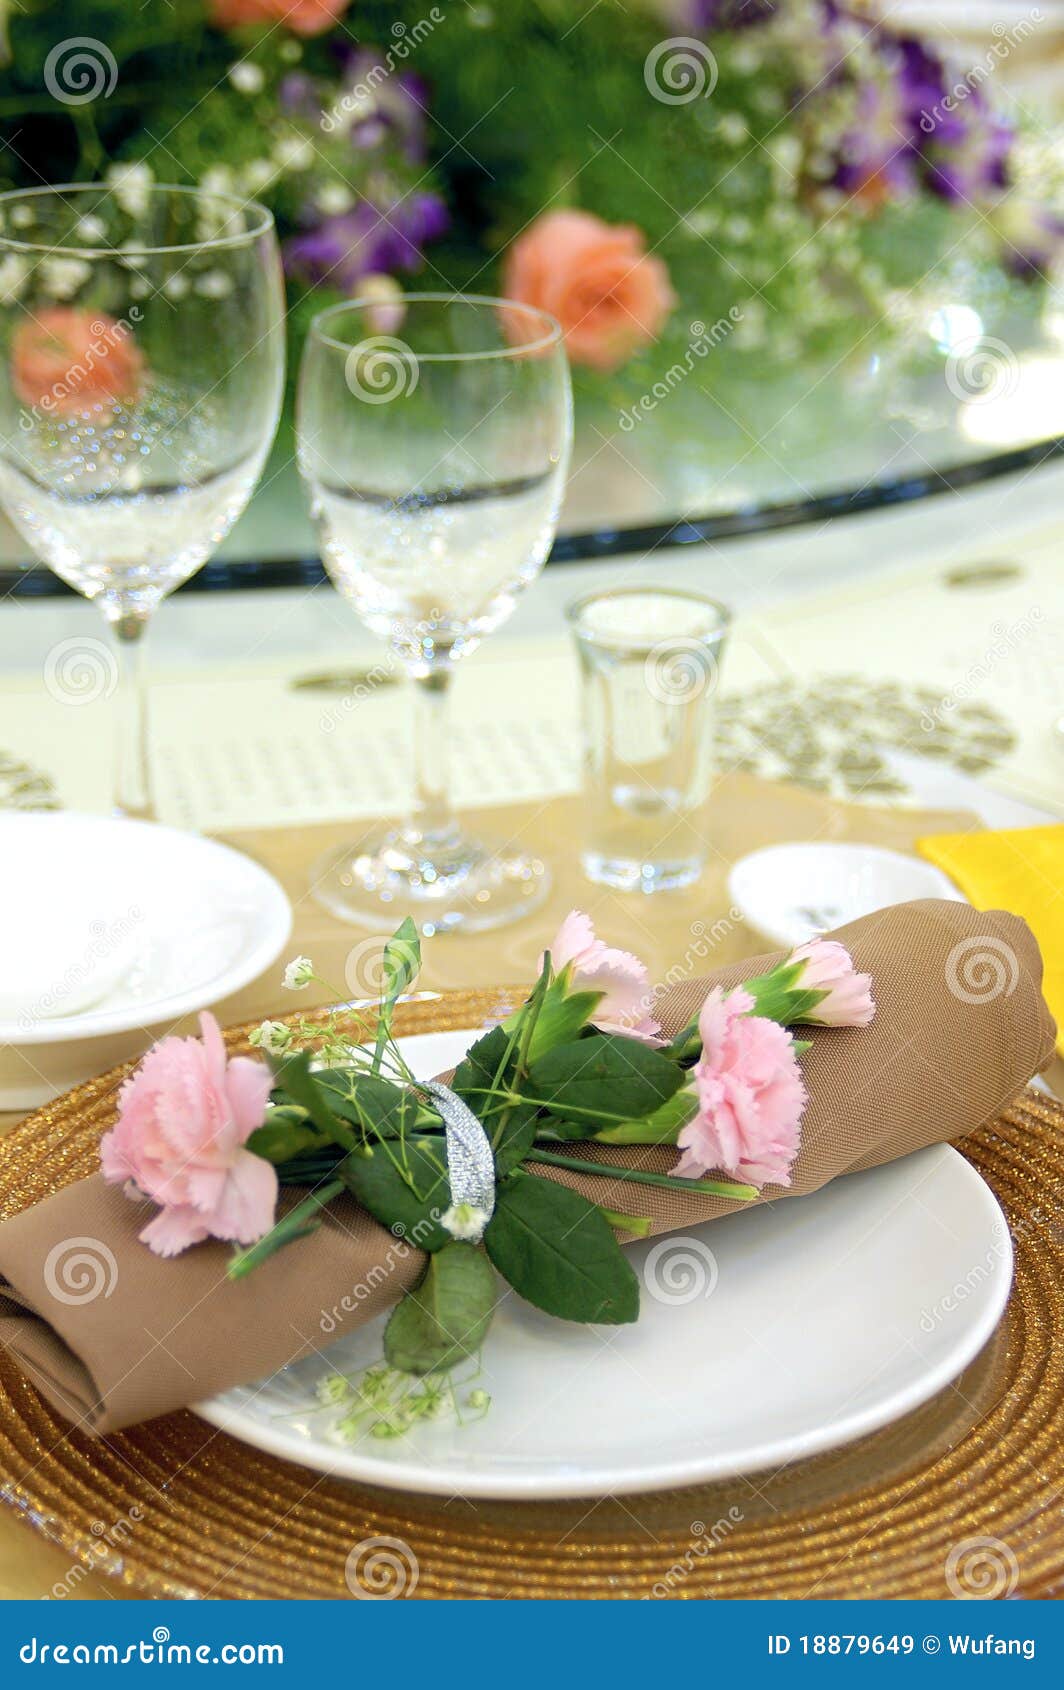 formal banquet